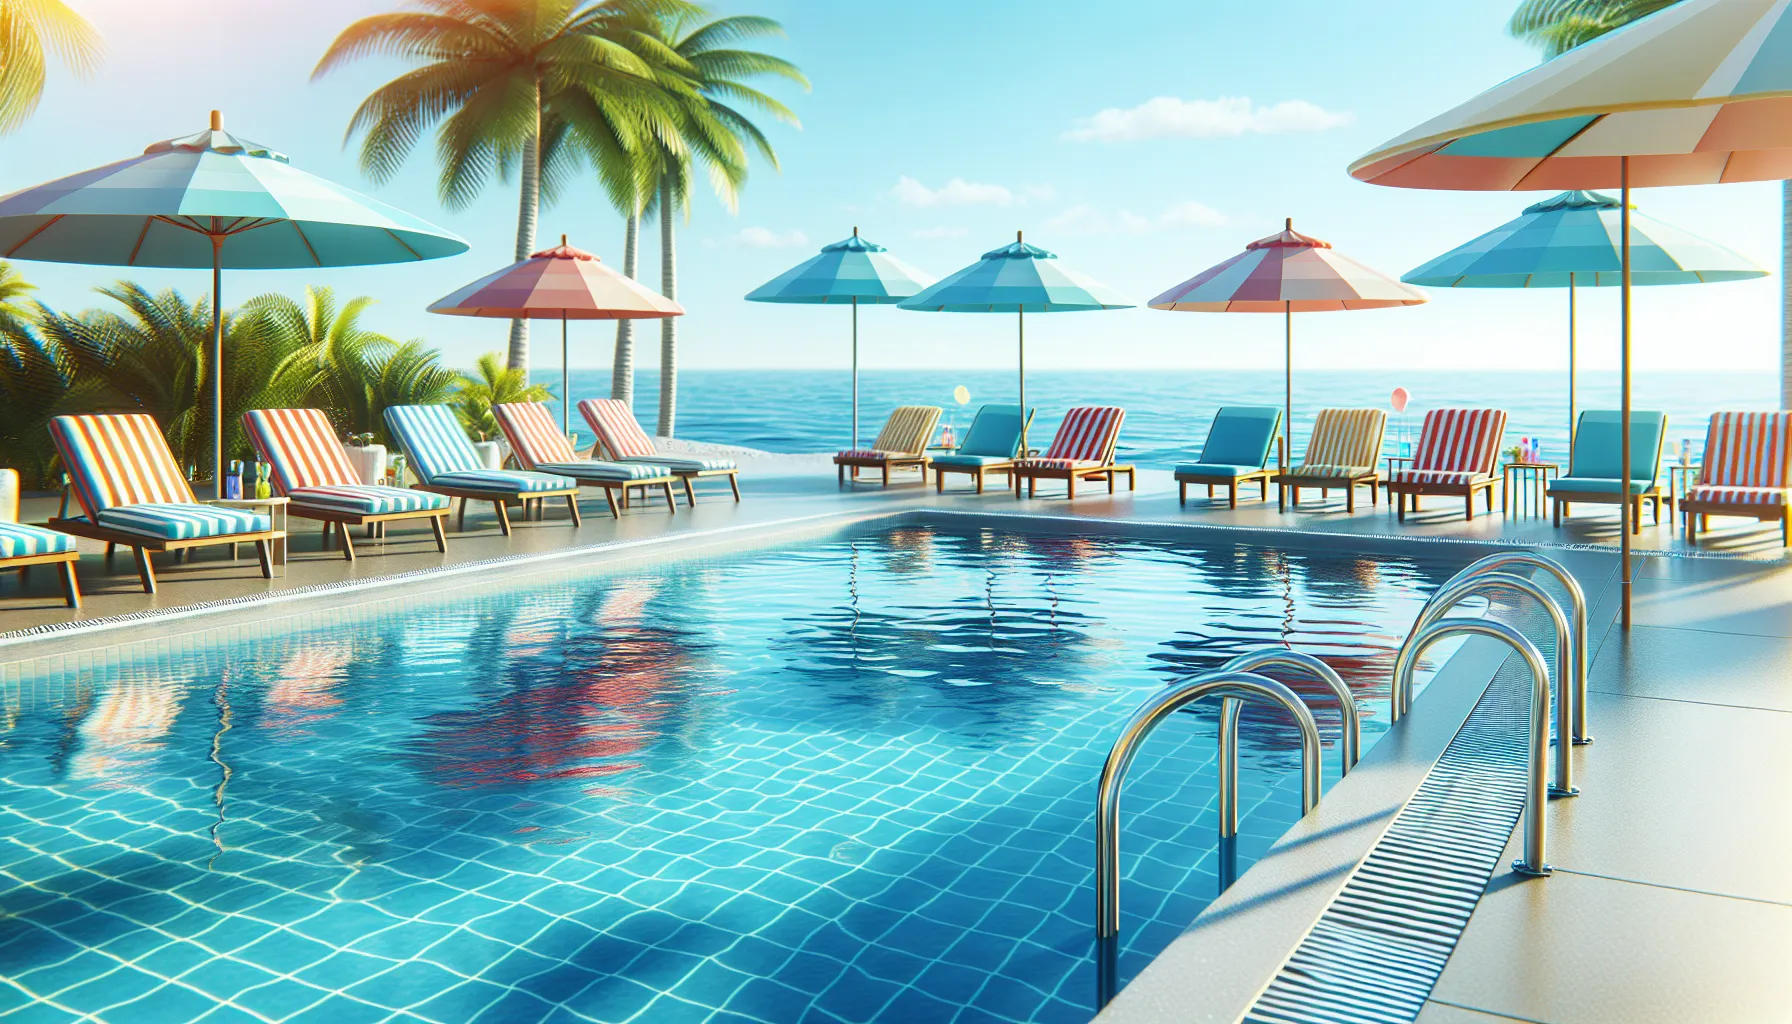 Imagen de piscina limpia y lista para el verano con sillas de playa y sombrillas.